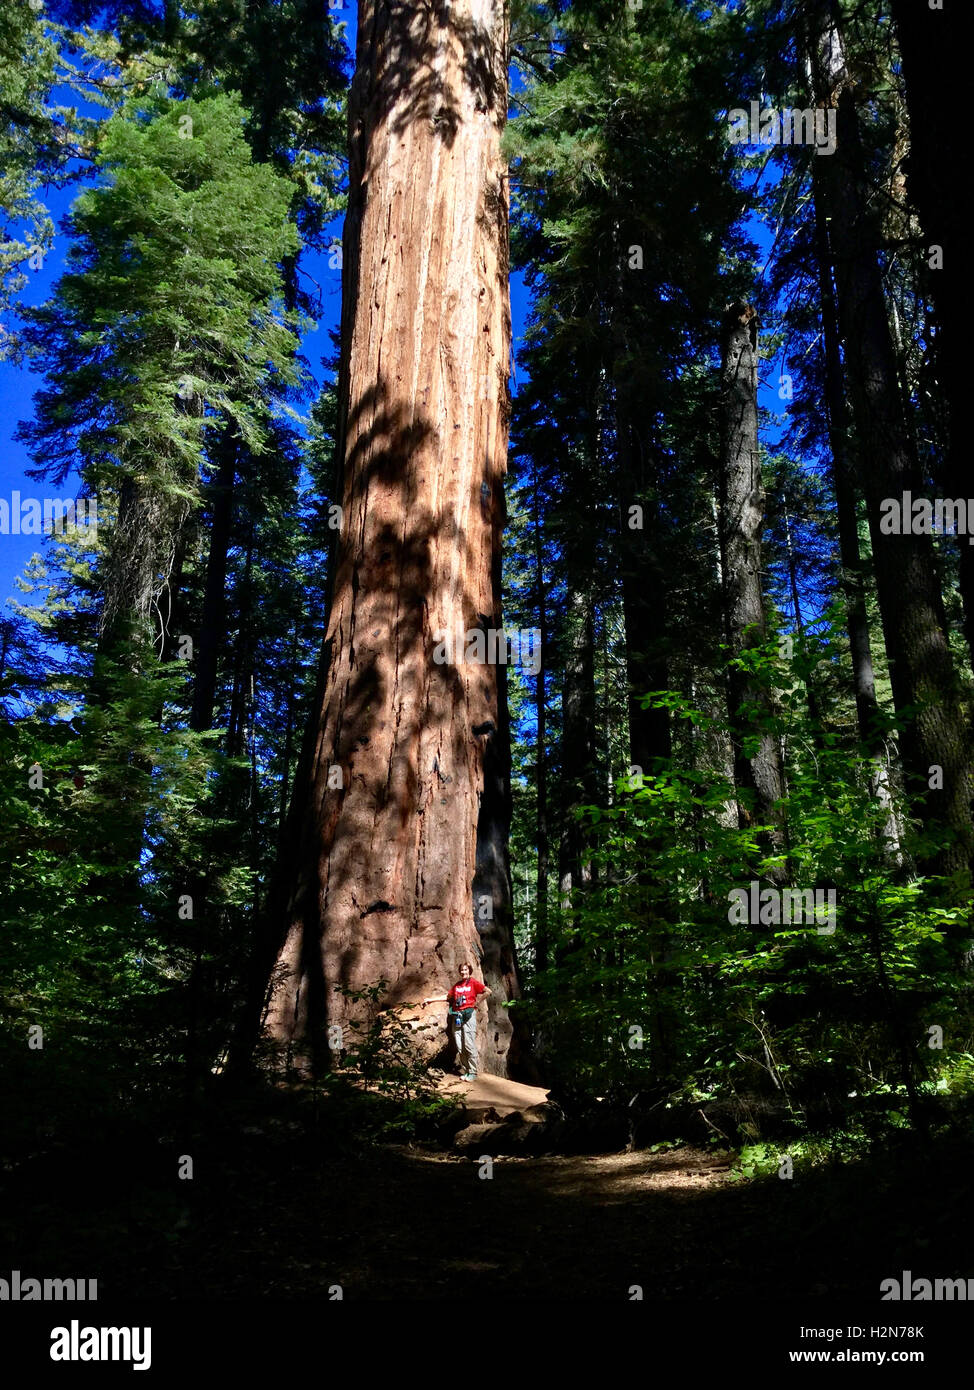 Randonneur debout devant un énorme séquoia géant en parc d'État Calaveras Big Trees, Californie Banque D'Images